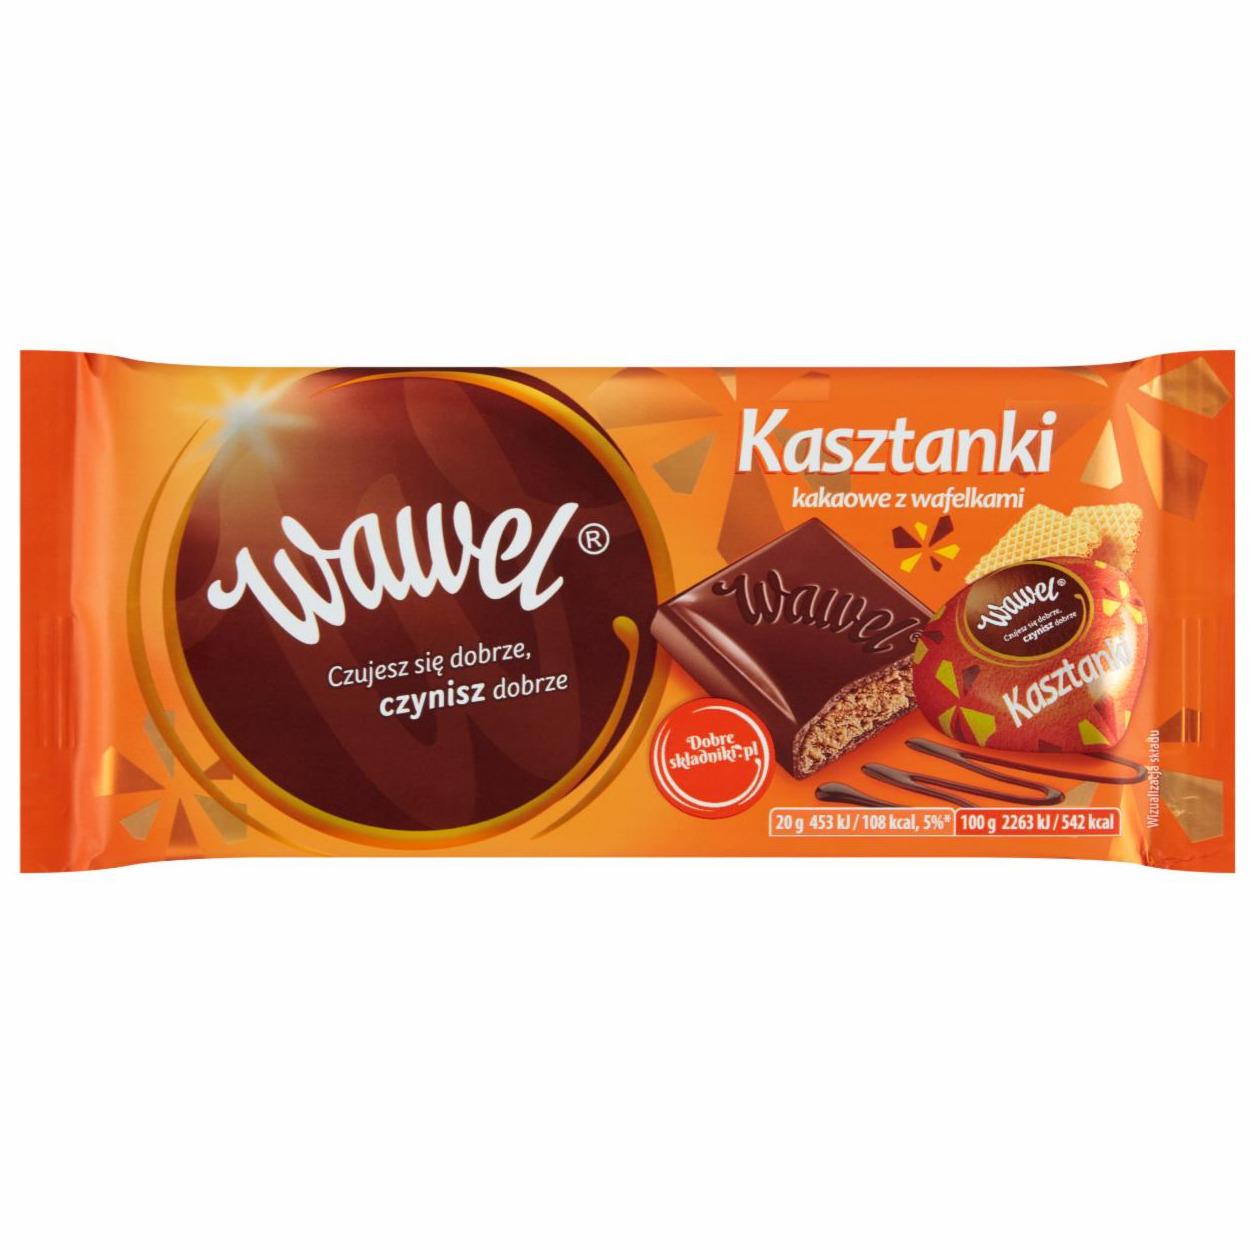 Zdjęcia - Wawel Kasztanki kakaowe z wafelkami Czekolada nadziewana 100 g